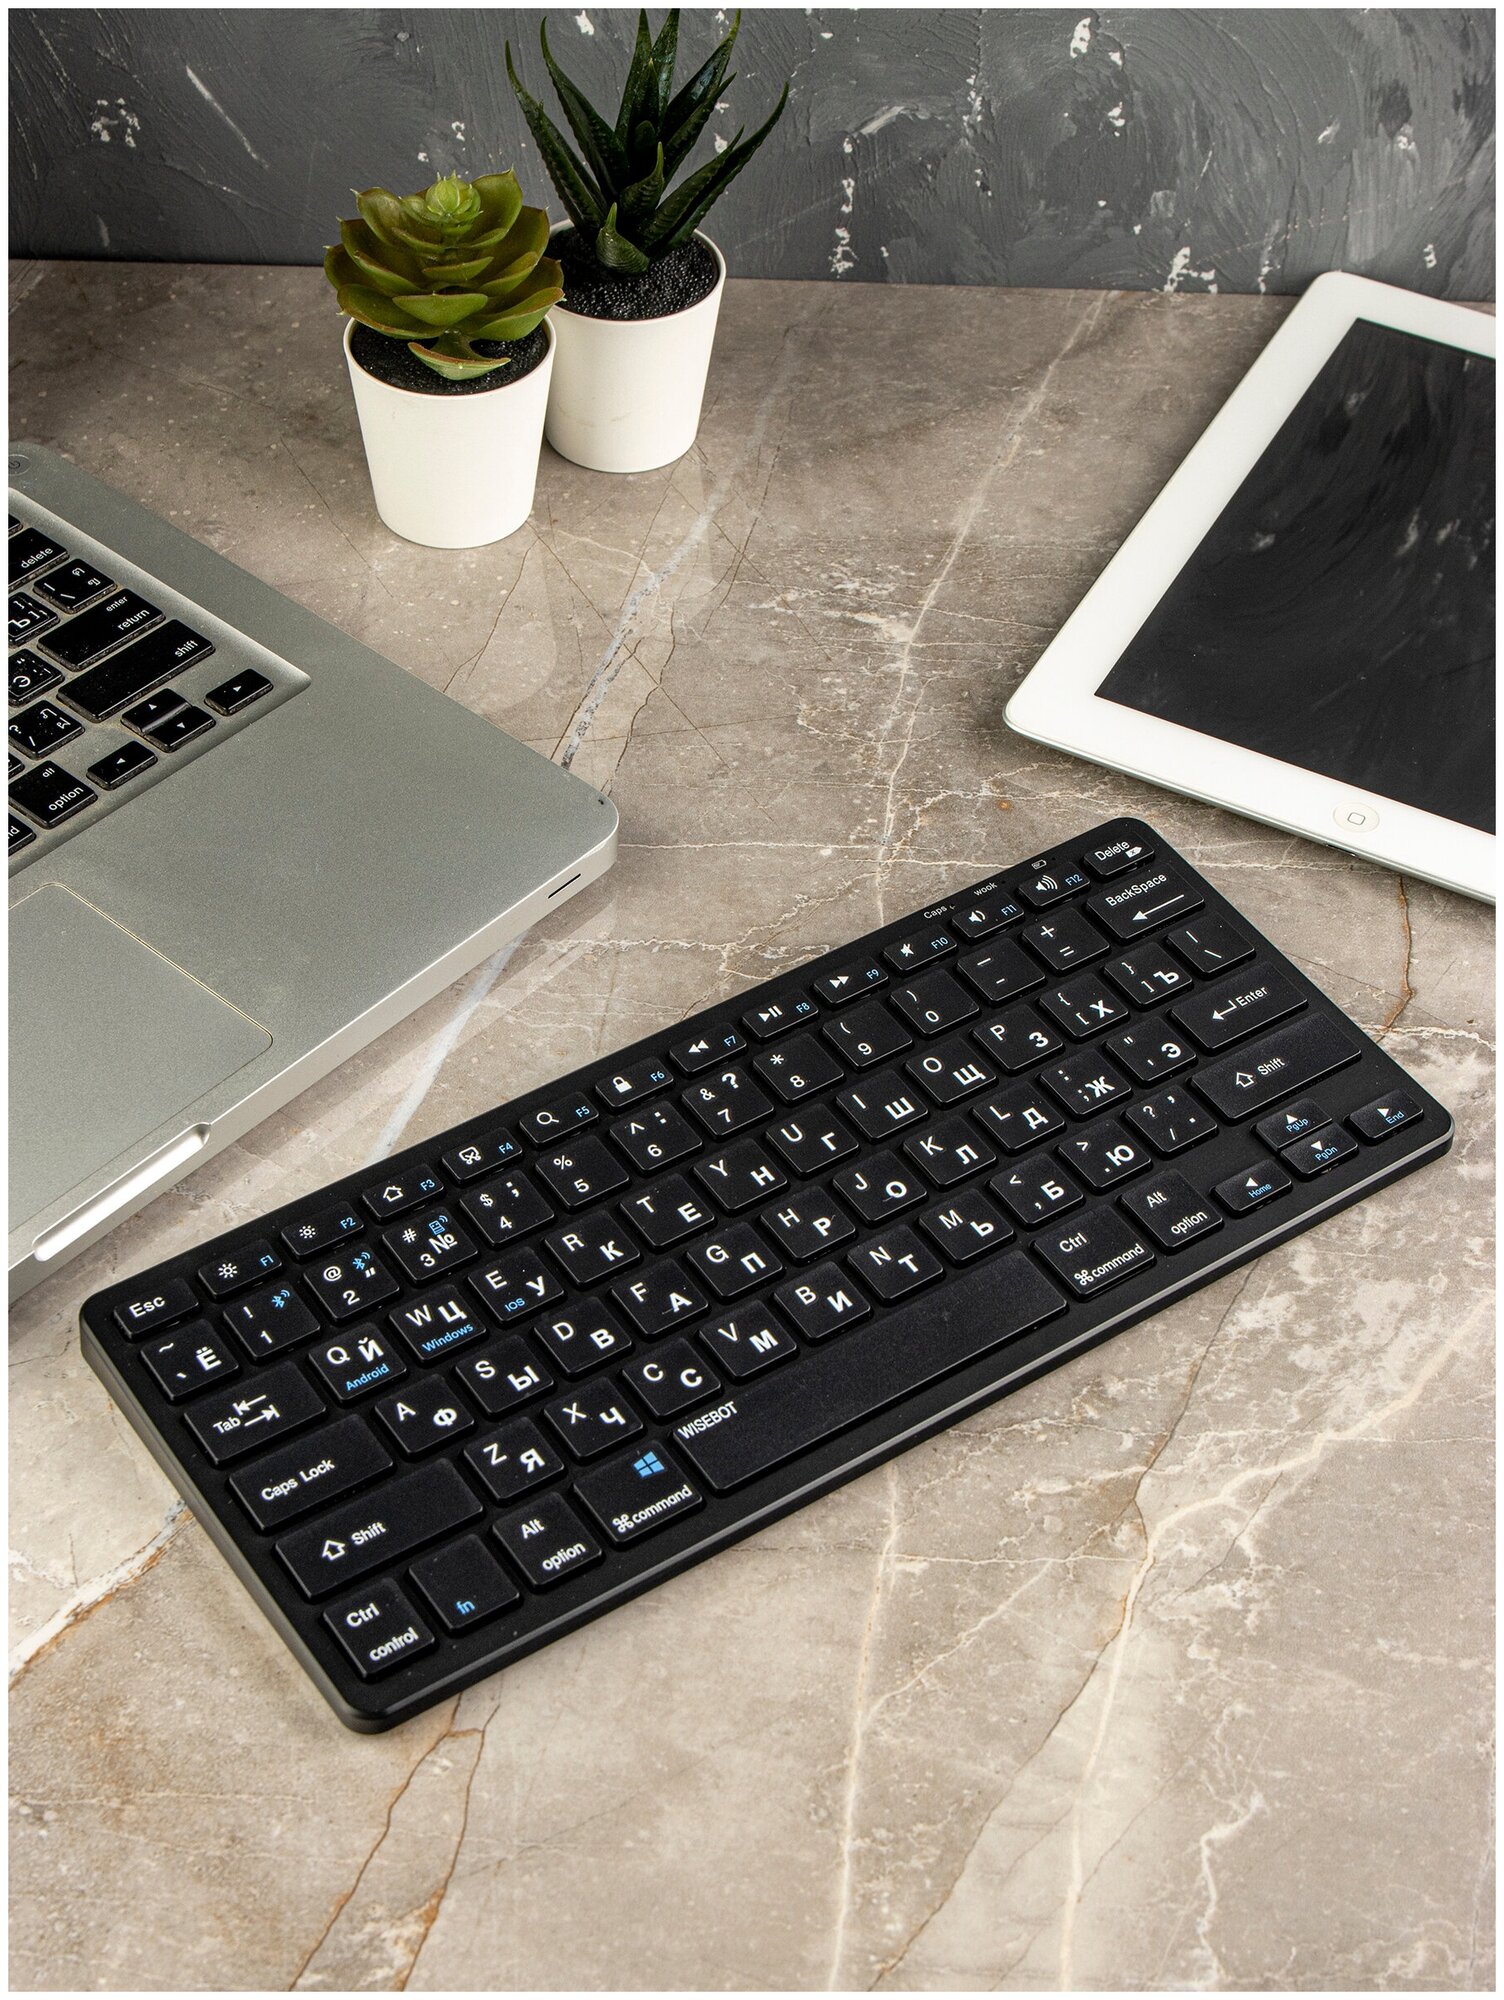 Клавиатура беспроводная, перезаряжаемая, стильная для ПК, ноутбука, планшета, смартфона или Smart TV, серебристая